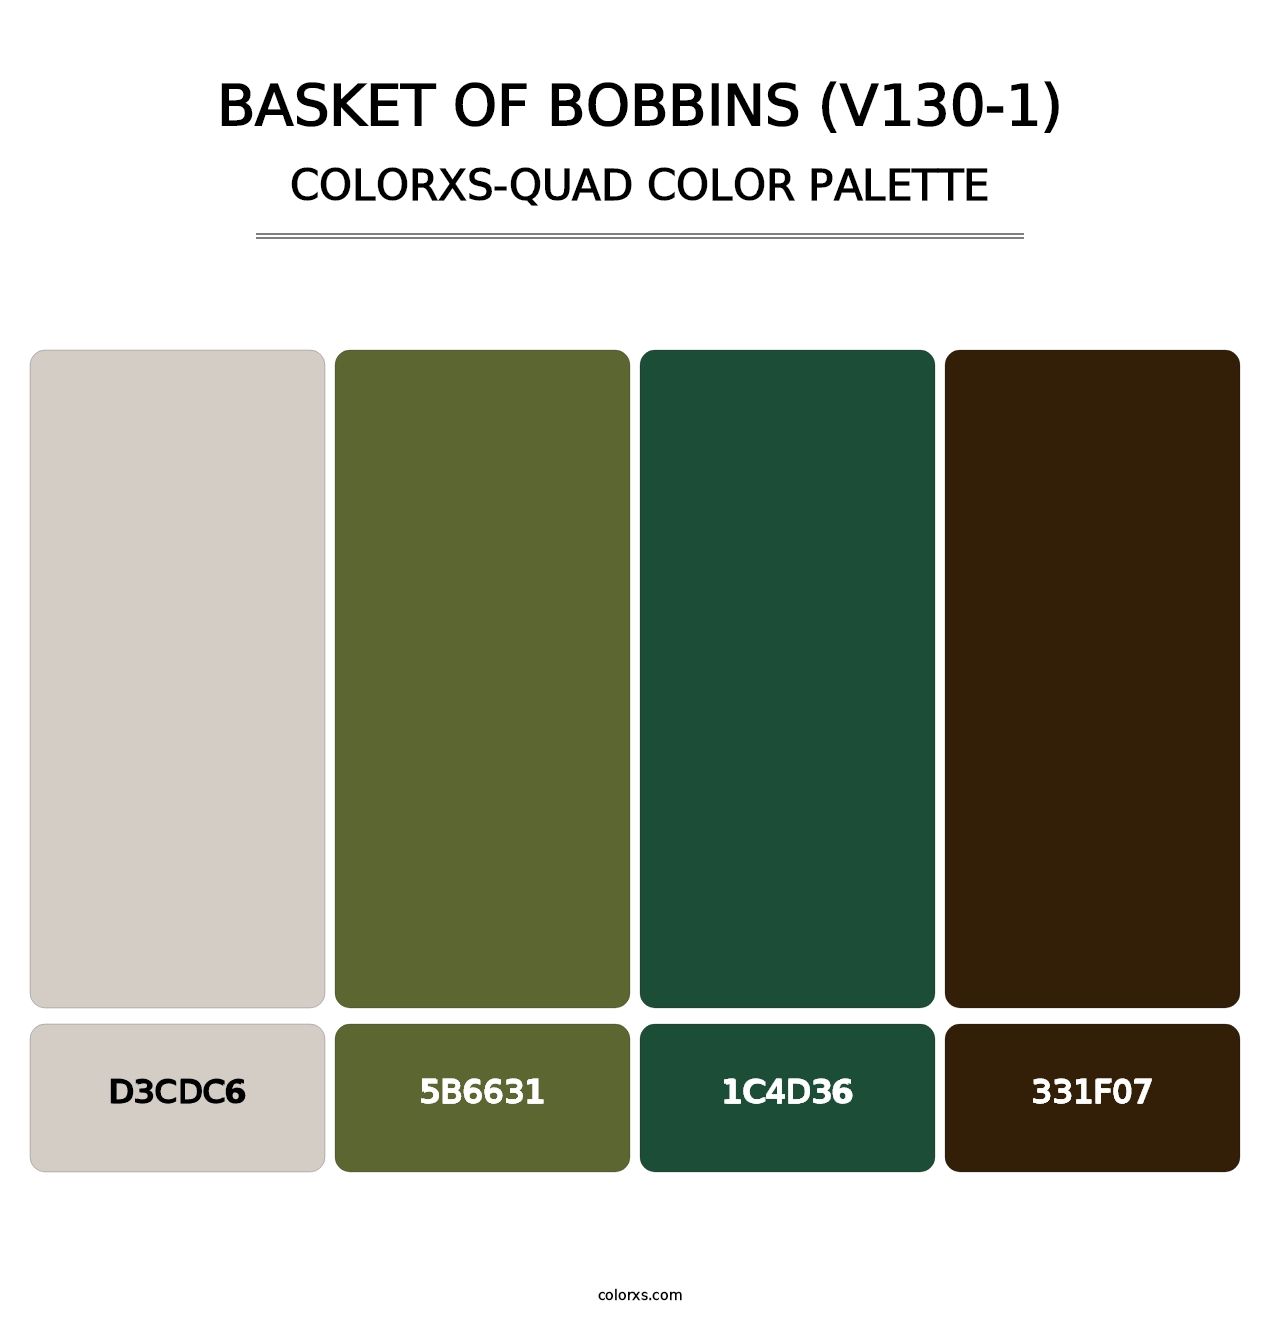 Basket of Bobbins (V130-1) - Colorxs Quad Palette